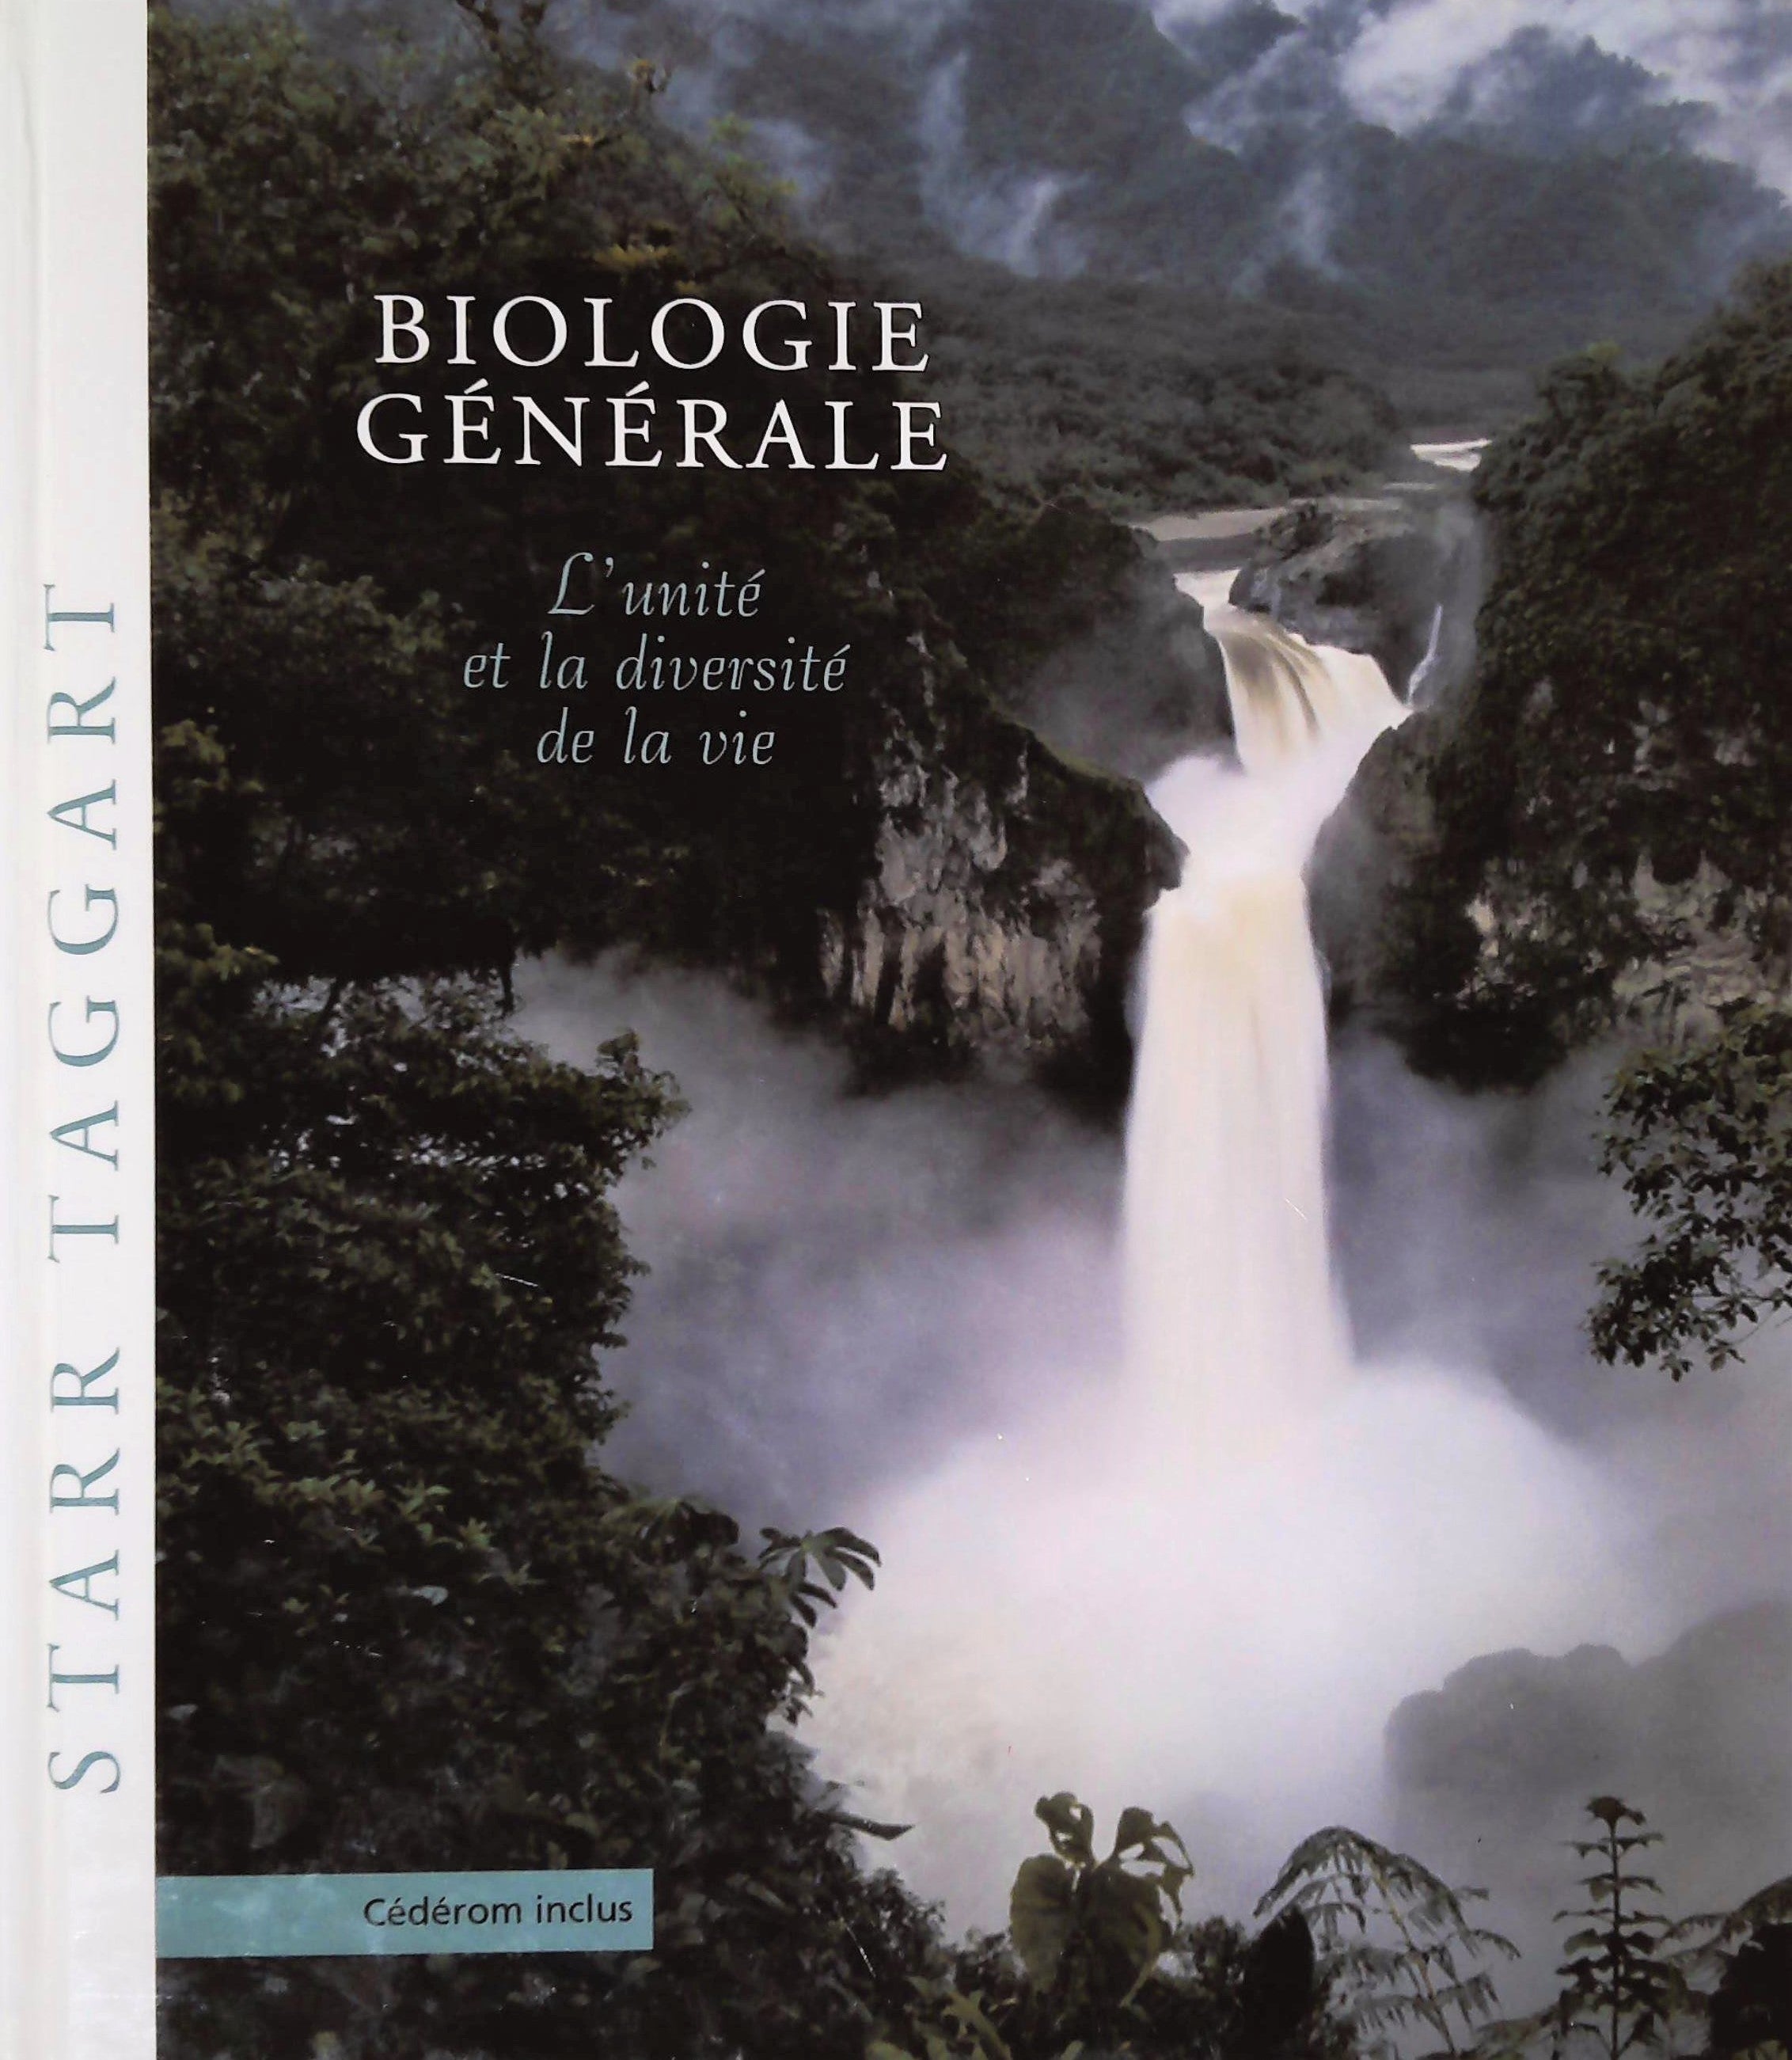 Livre ISBN 2895930635 Biologie générale : L'unité et la diversité de la vie (Cecie Starr)